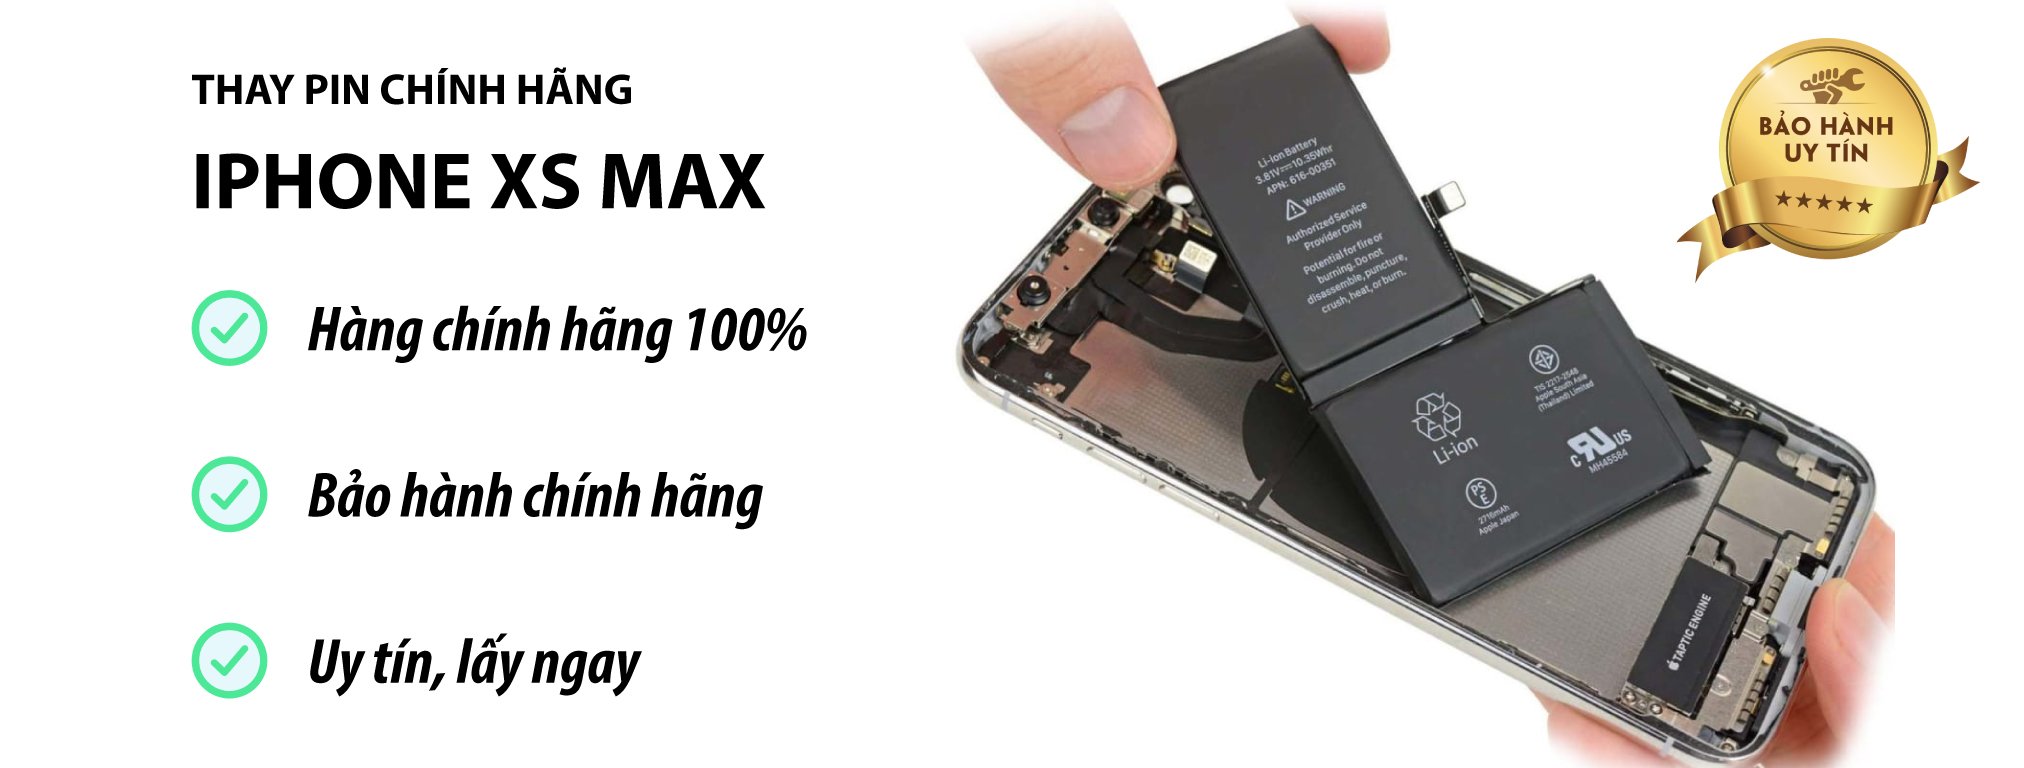 thay pin iphone xs max chính hãng Hà Nội